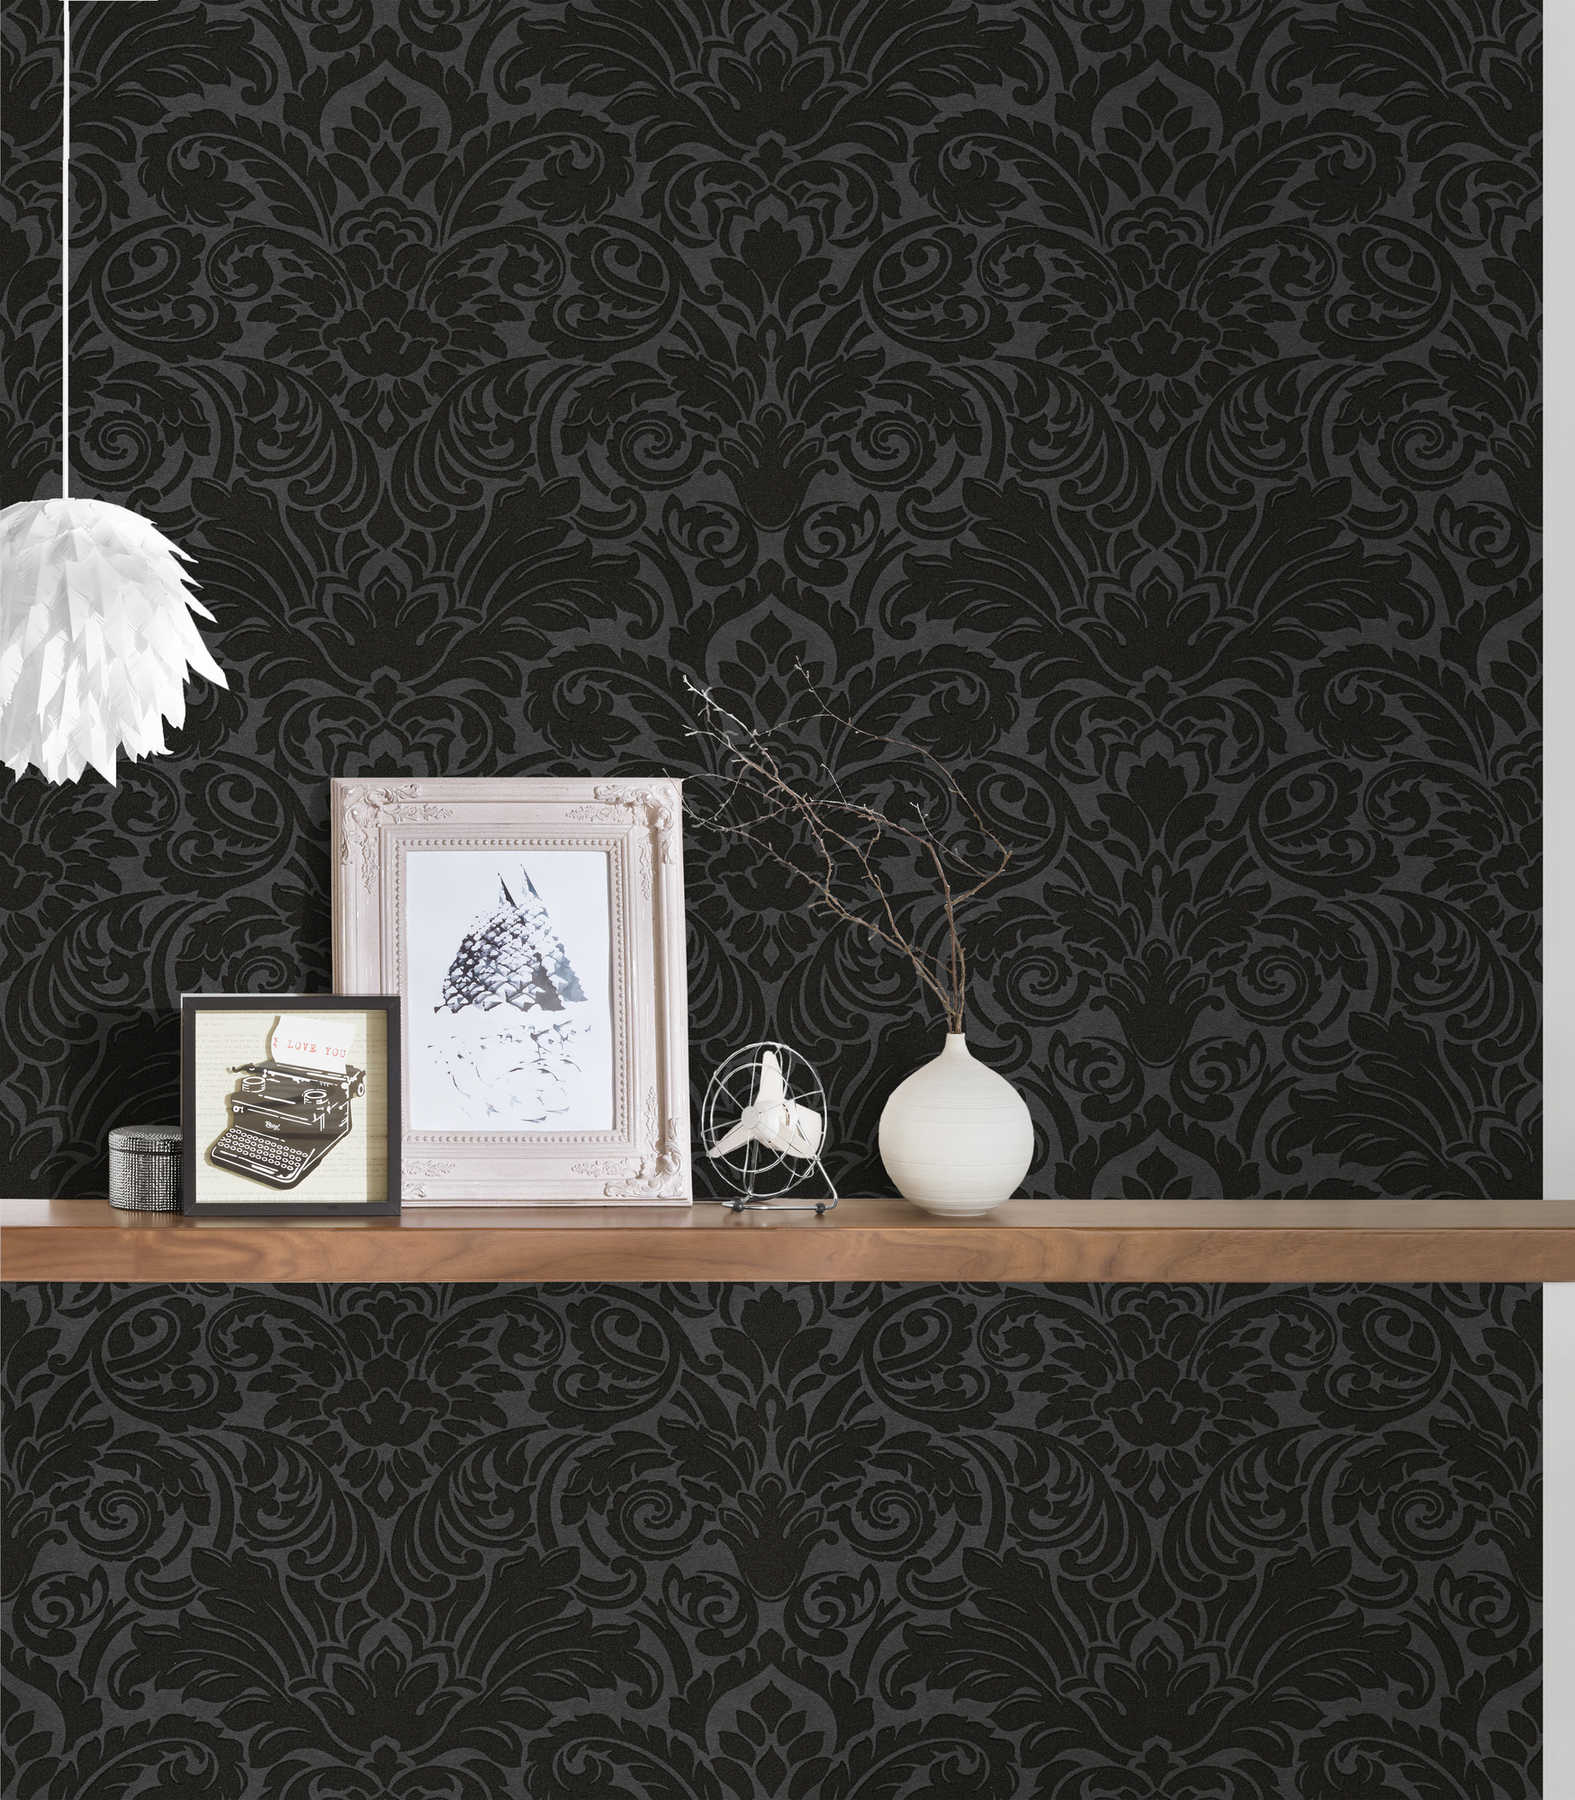             Papel pintado ornamental efecto metálico y diseño floral - plata, negro
        